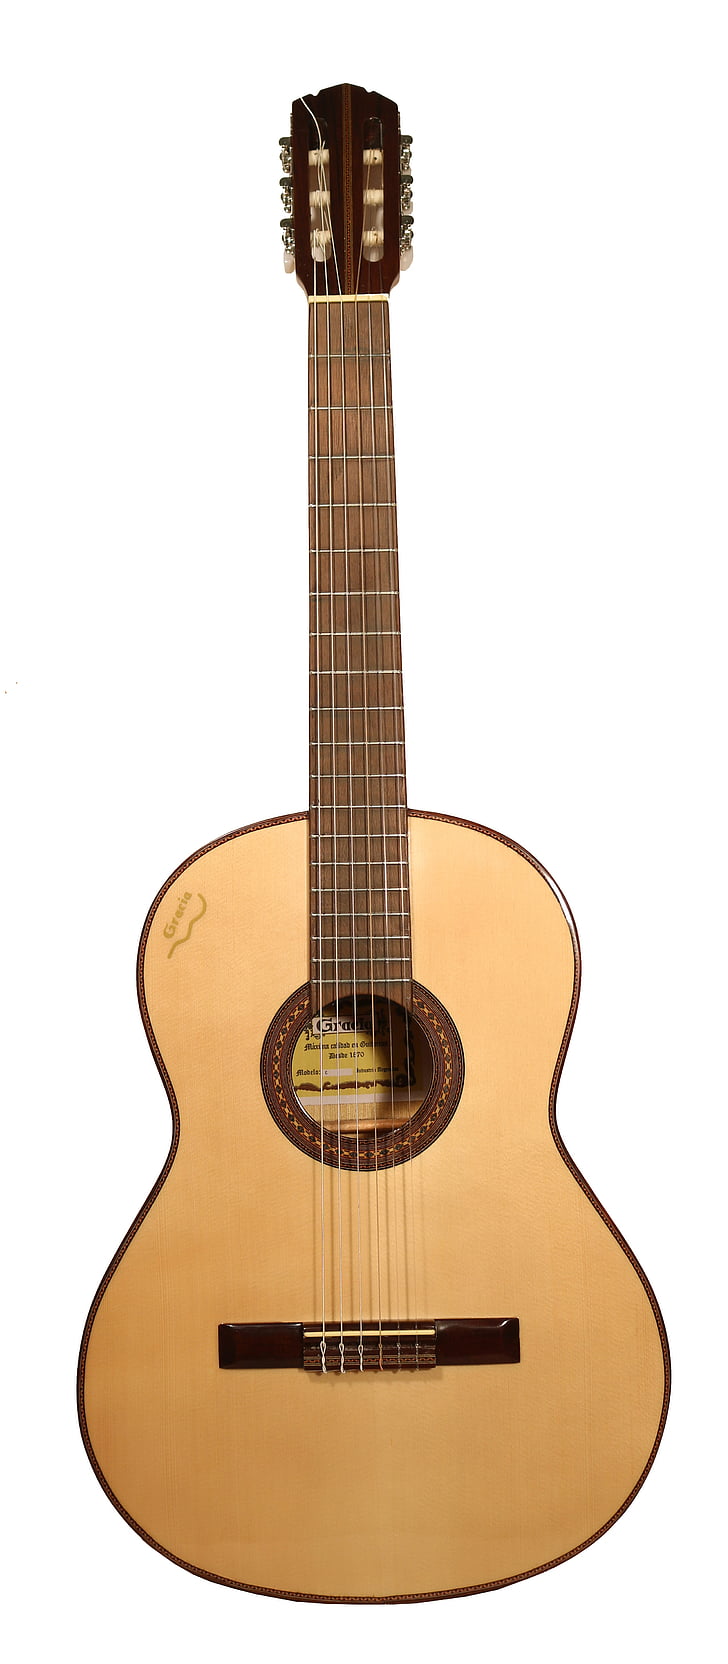 guitarra, clássico, luthier, Espanhol, diapasão, caixa, madeira